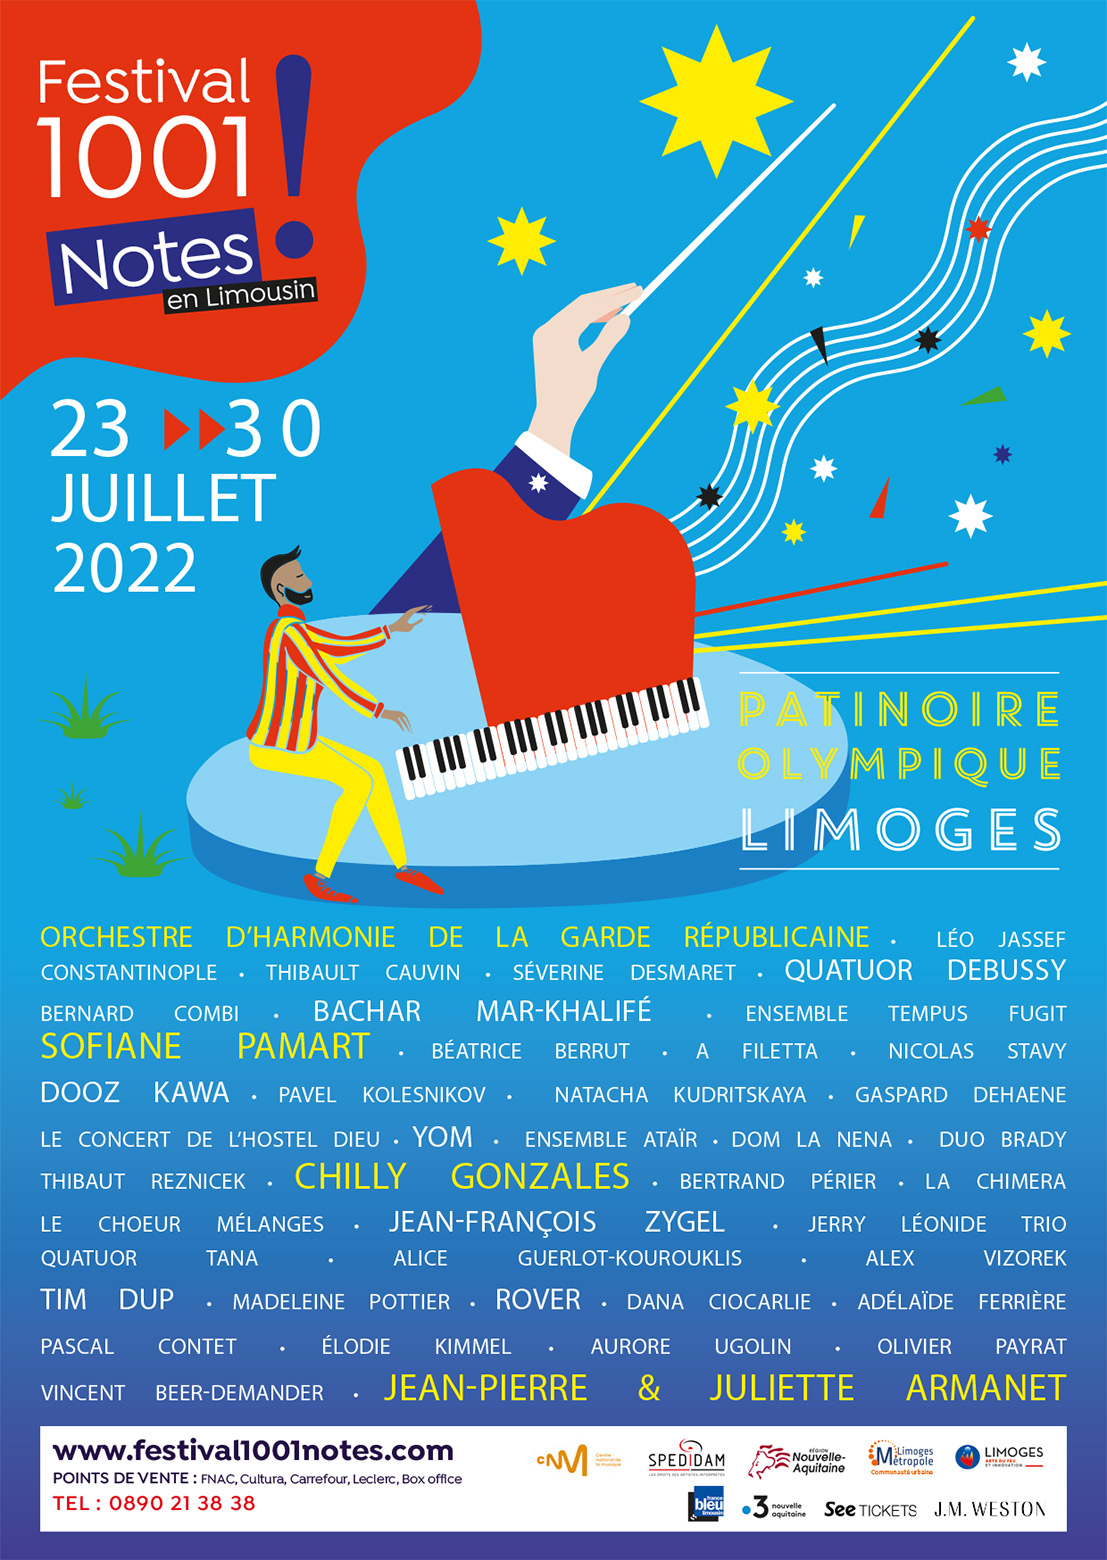 Festival 1001 Notes en Limousin